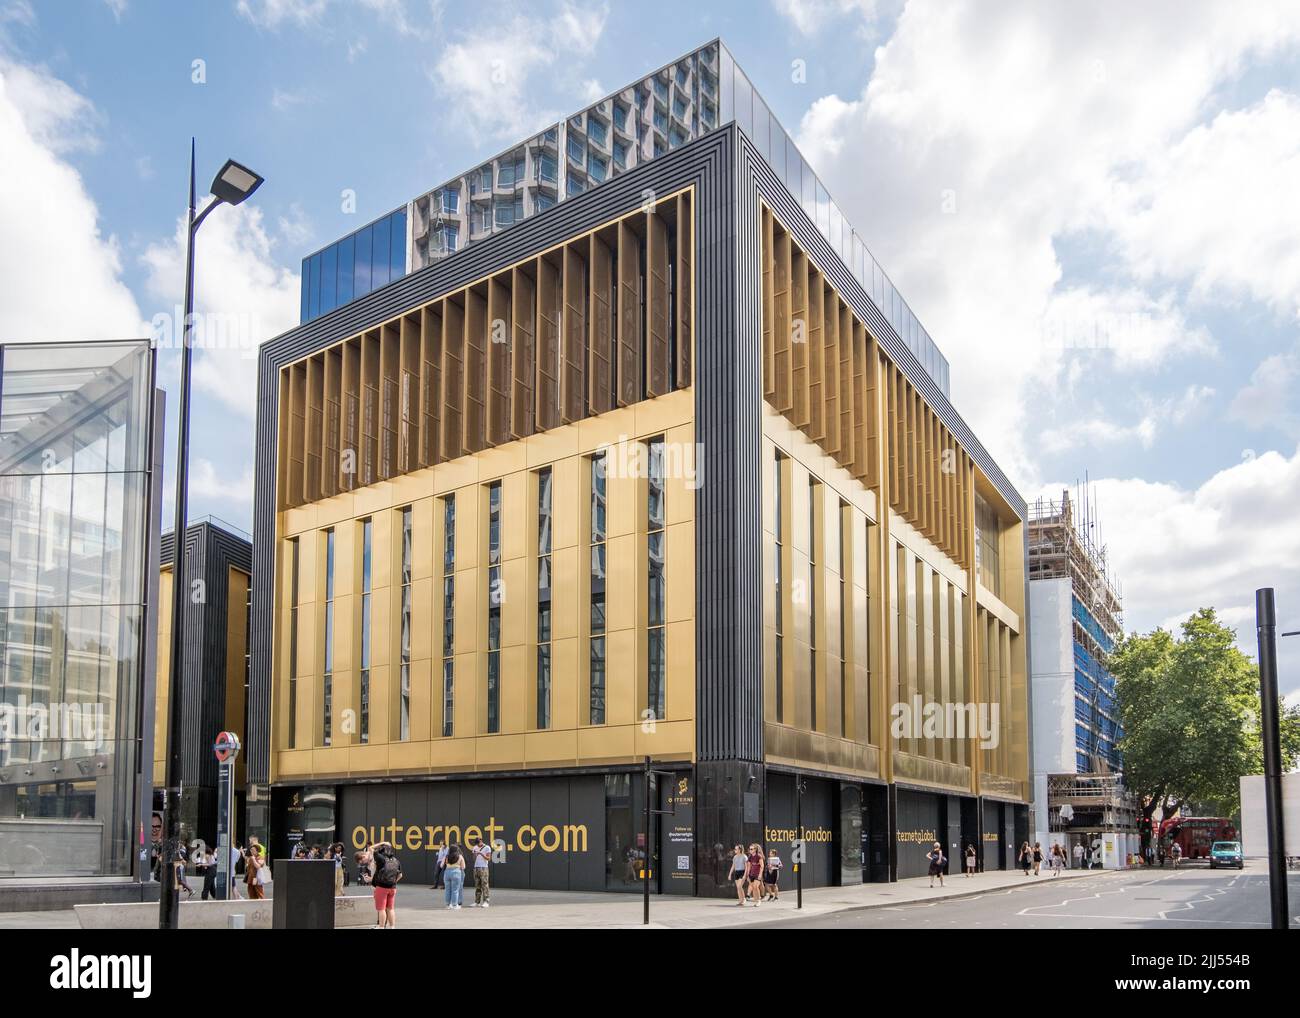 Der „Now Building“-Teil von Outernet, einem neuen Veranstaltungsort- und Medienkomplex an der Denmark Street im Londoner West End, England, Großbritannien. Stockfoto